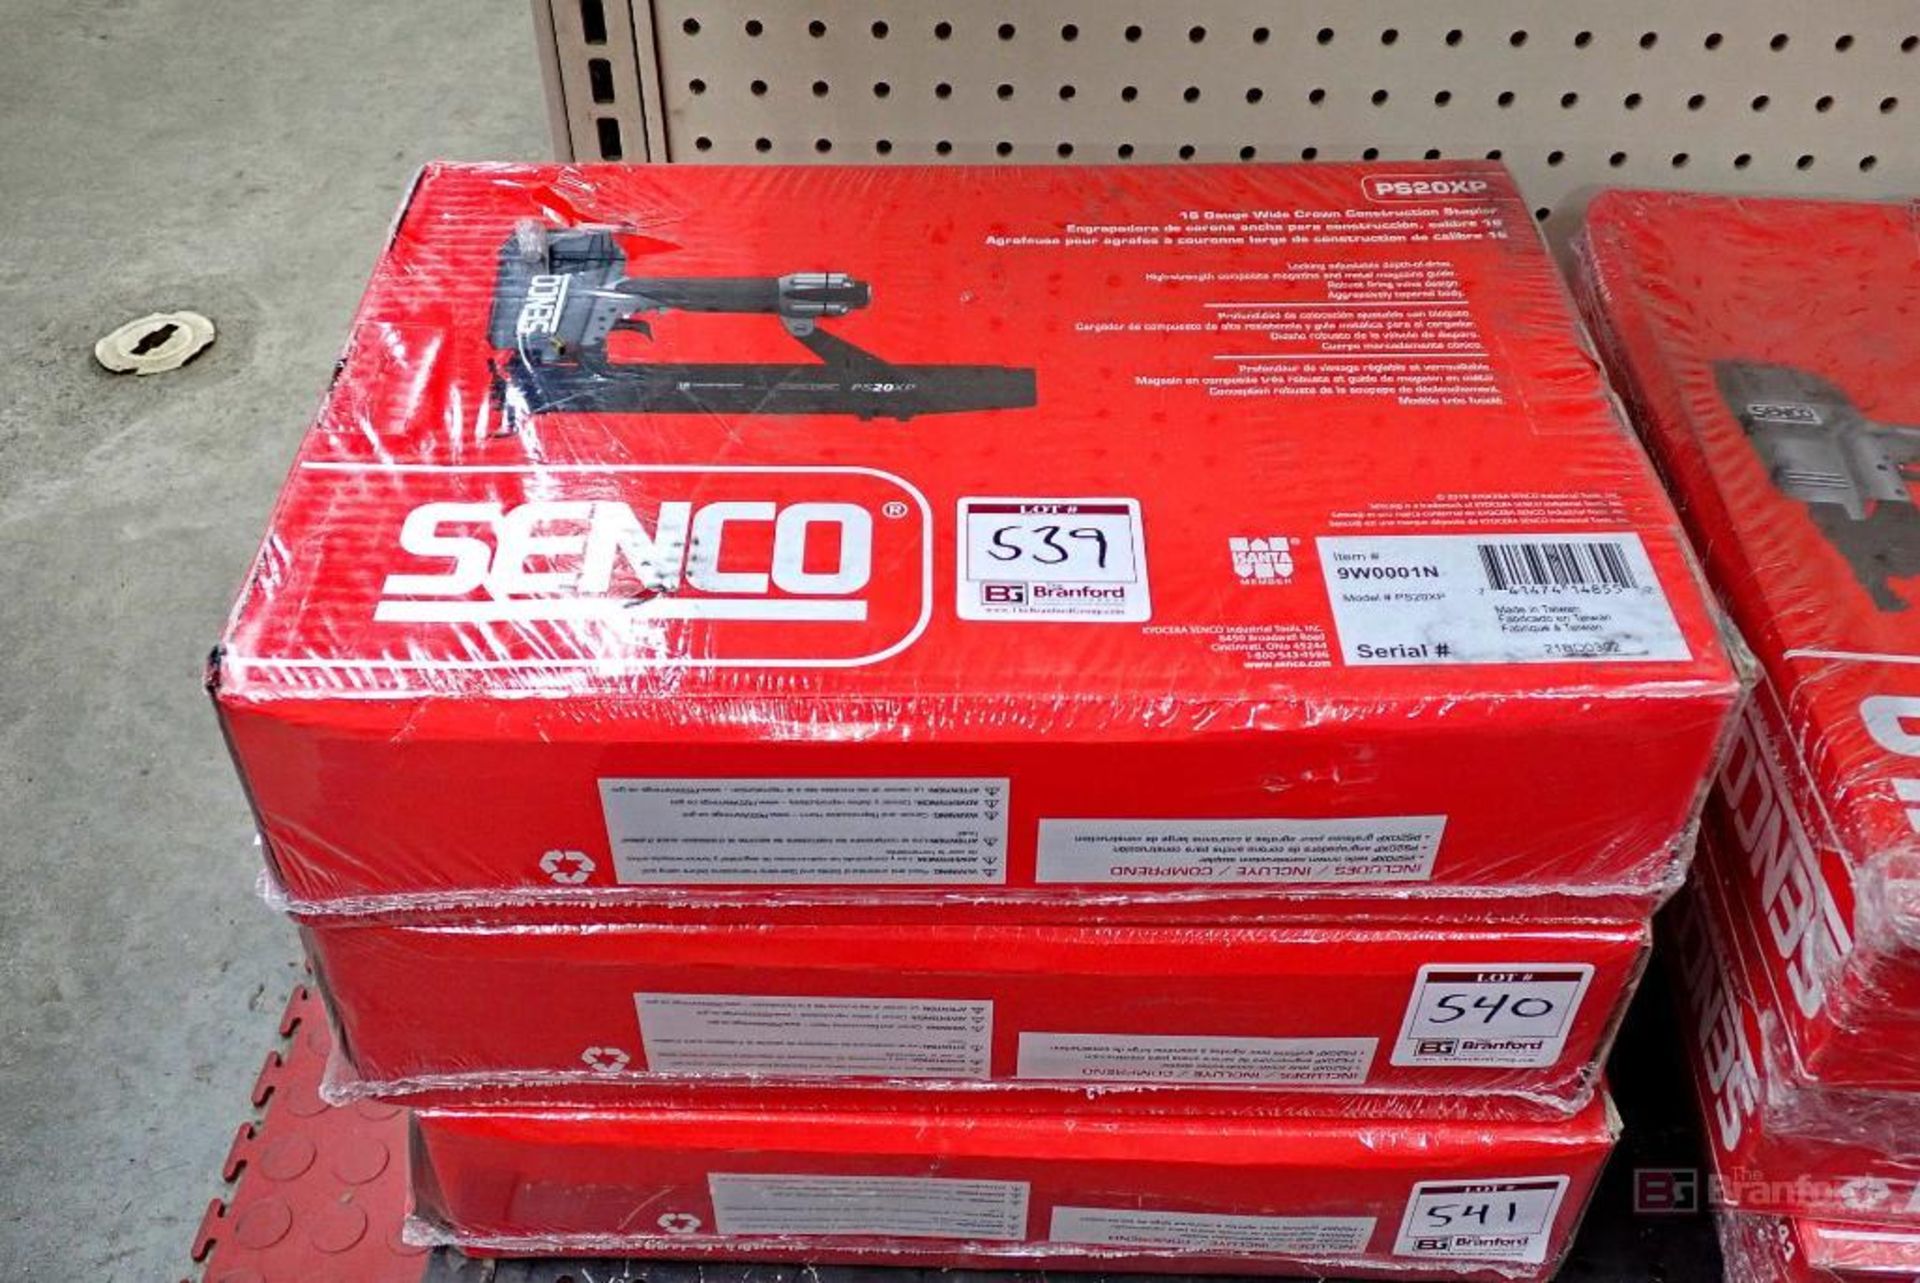 Senco PS20XP 16 Gauge Wide Crown Construction Stapler